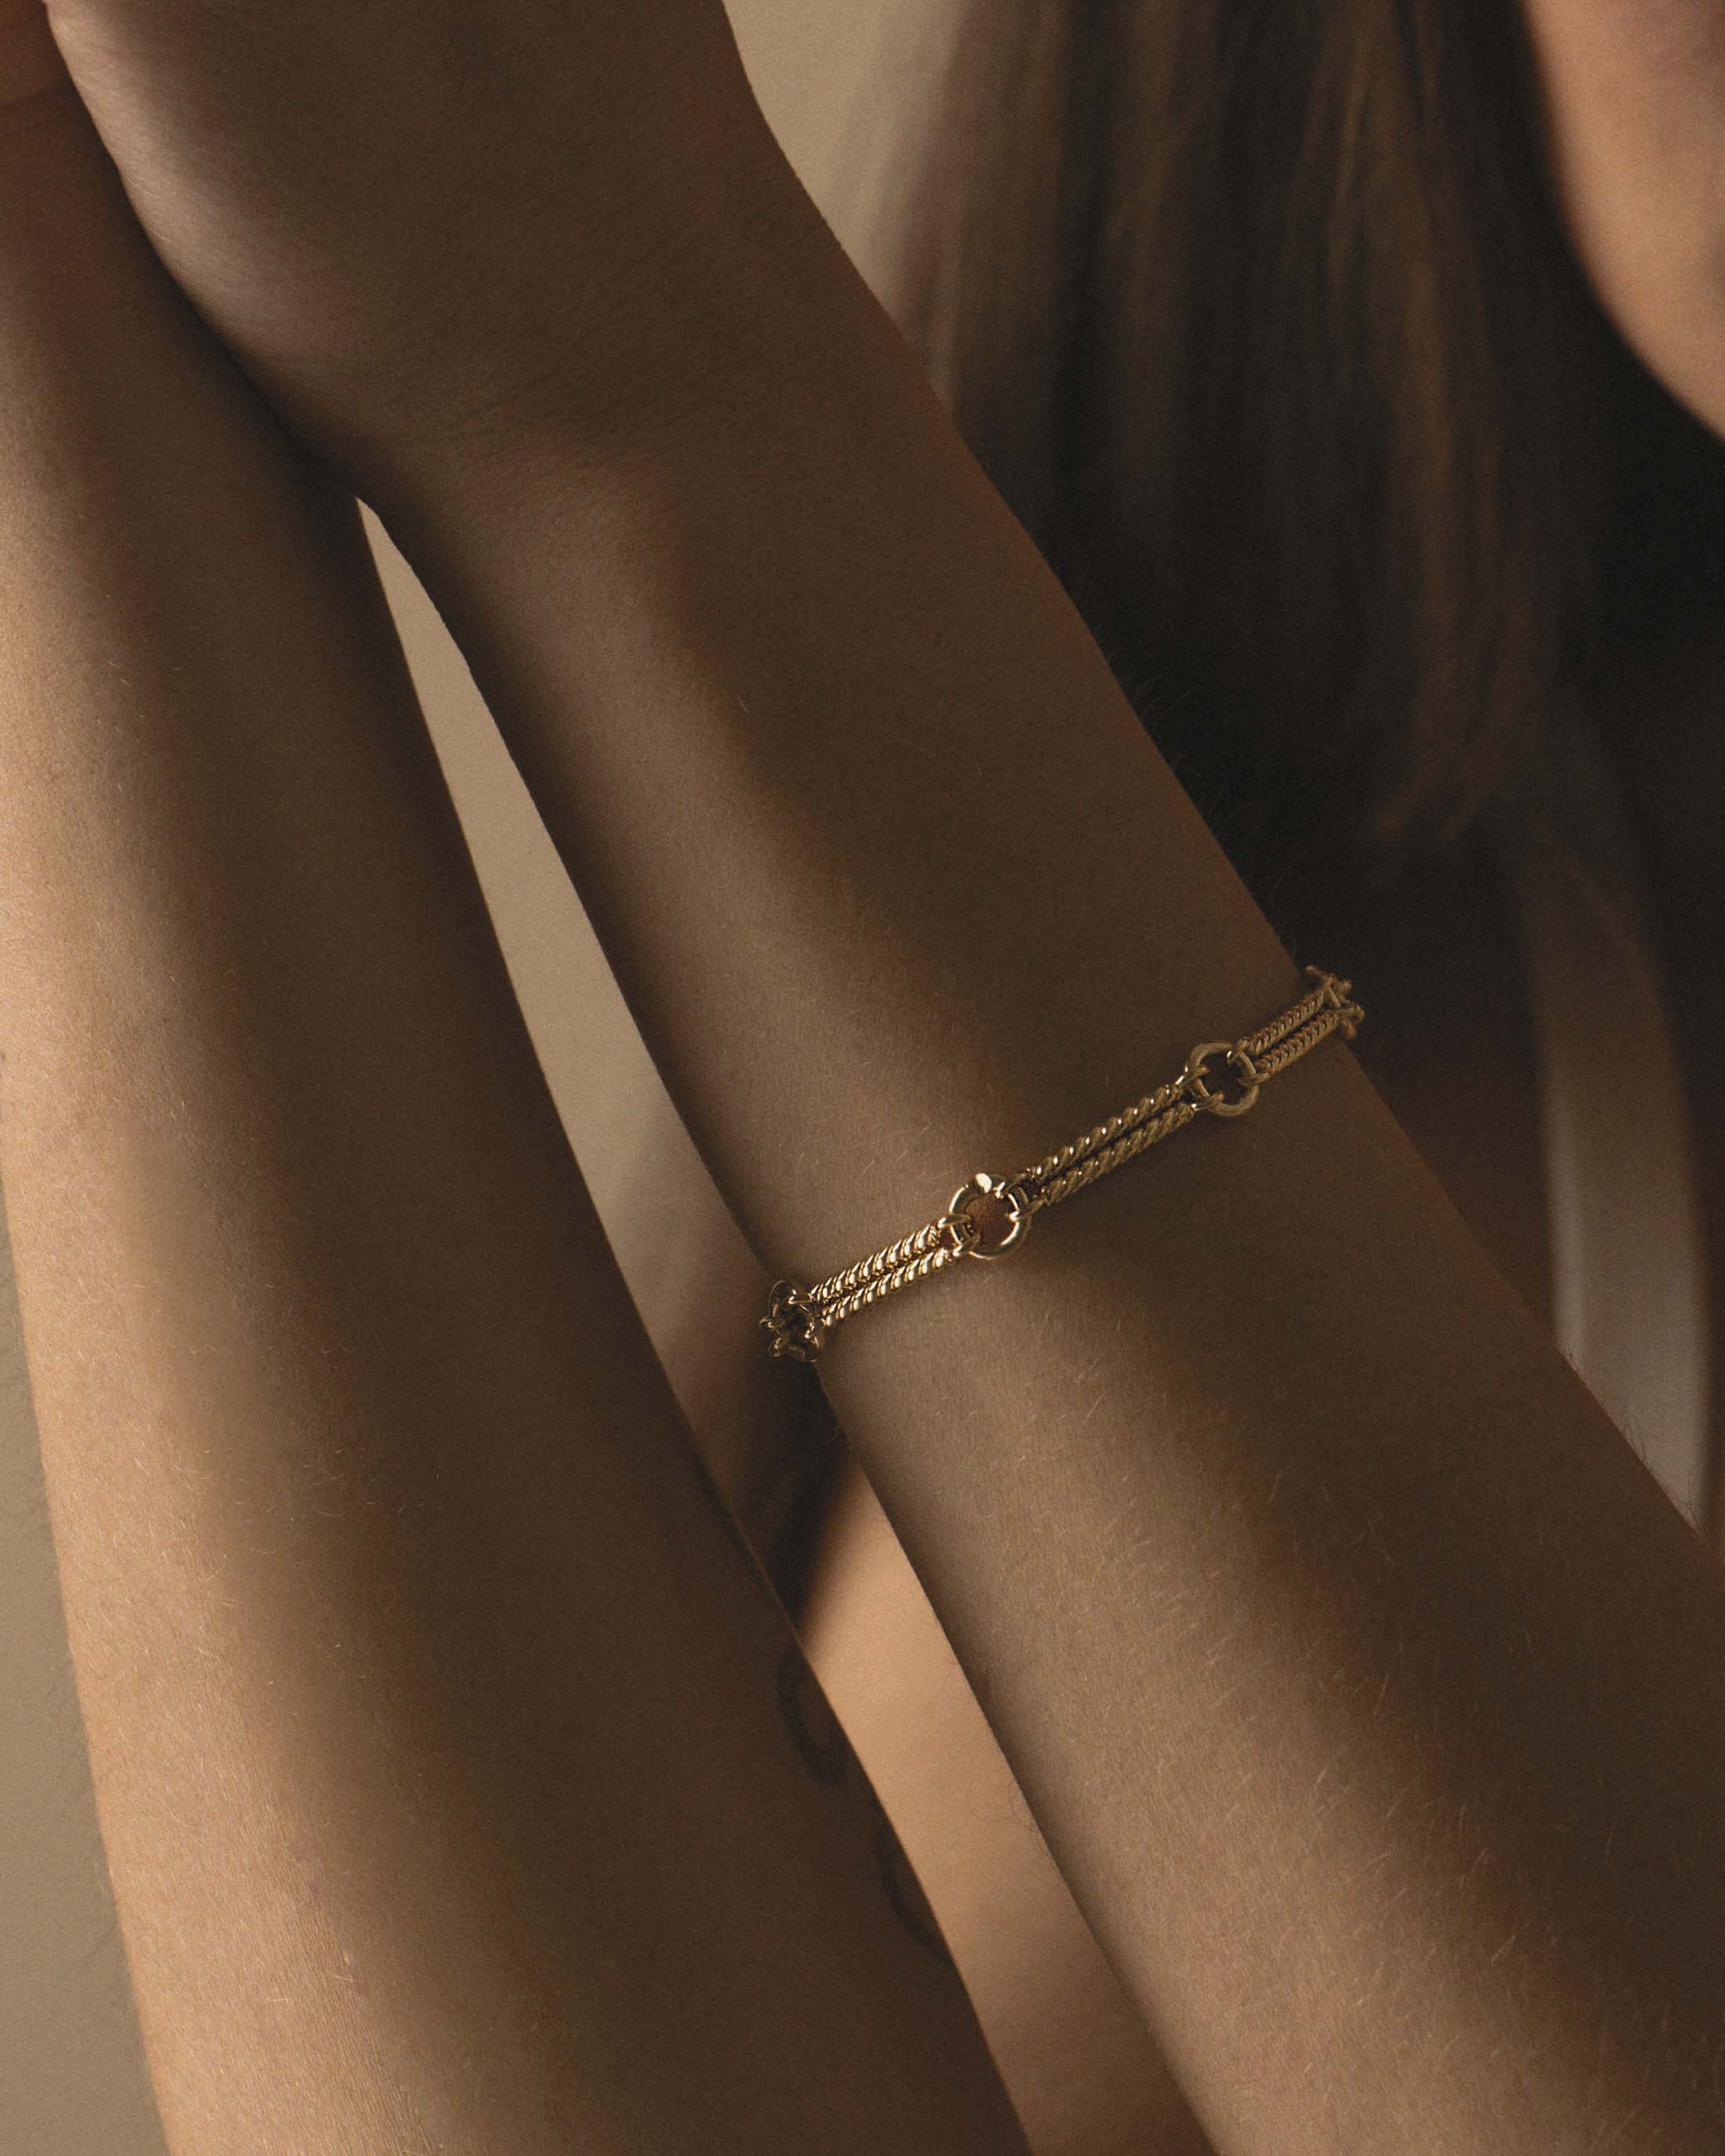 Bracelet éthique fabriqué en France composé d'une chaîne tige torsadée avec des mailles rondes en plaqué or 3 microns.